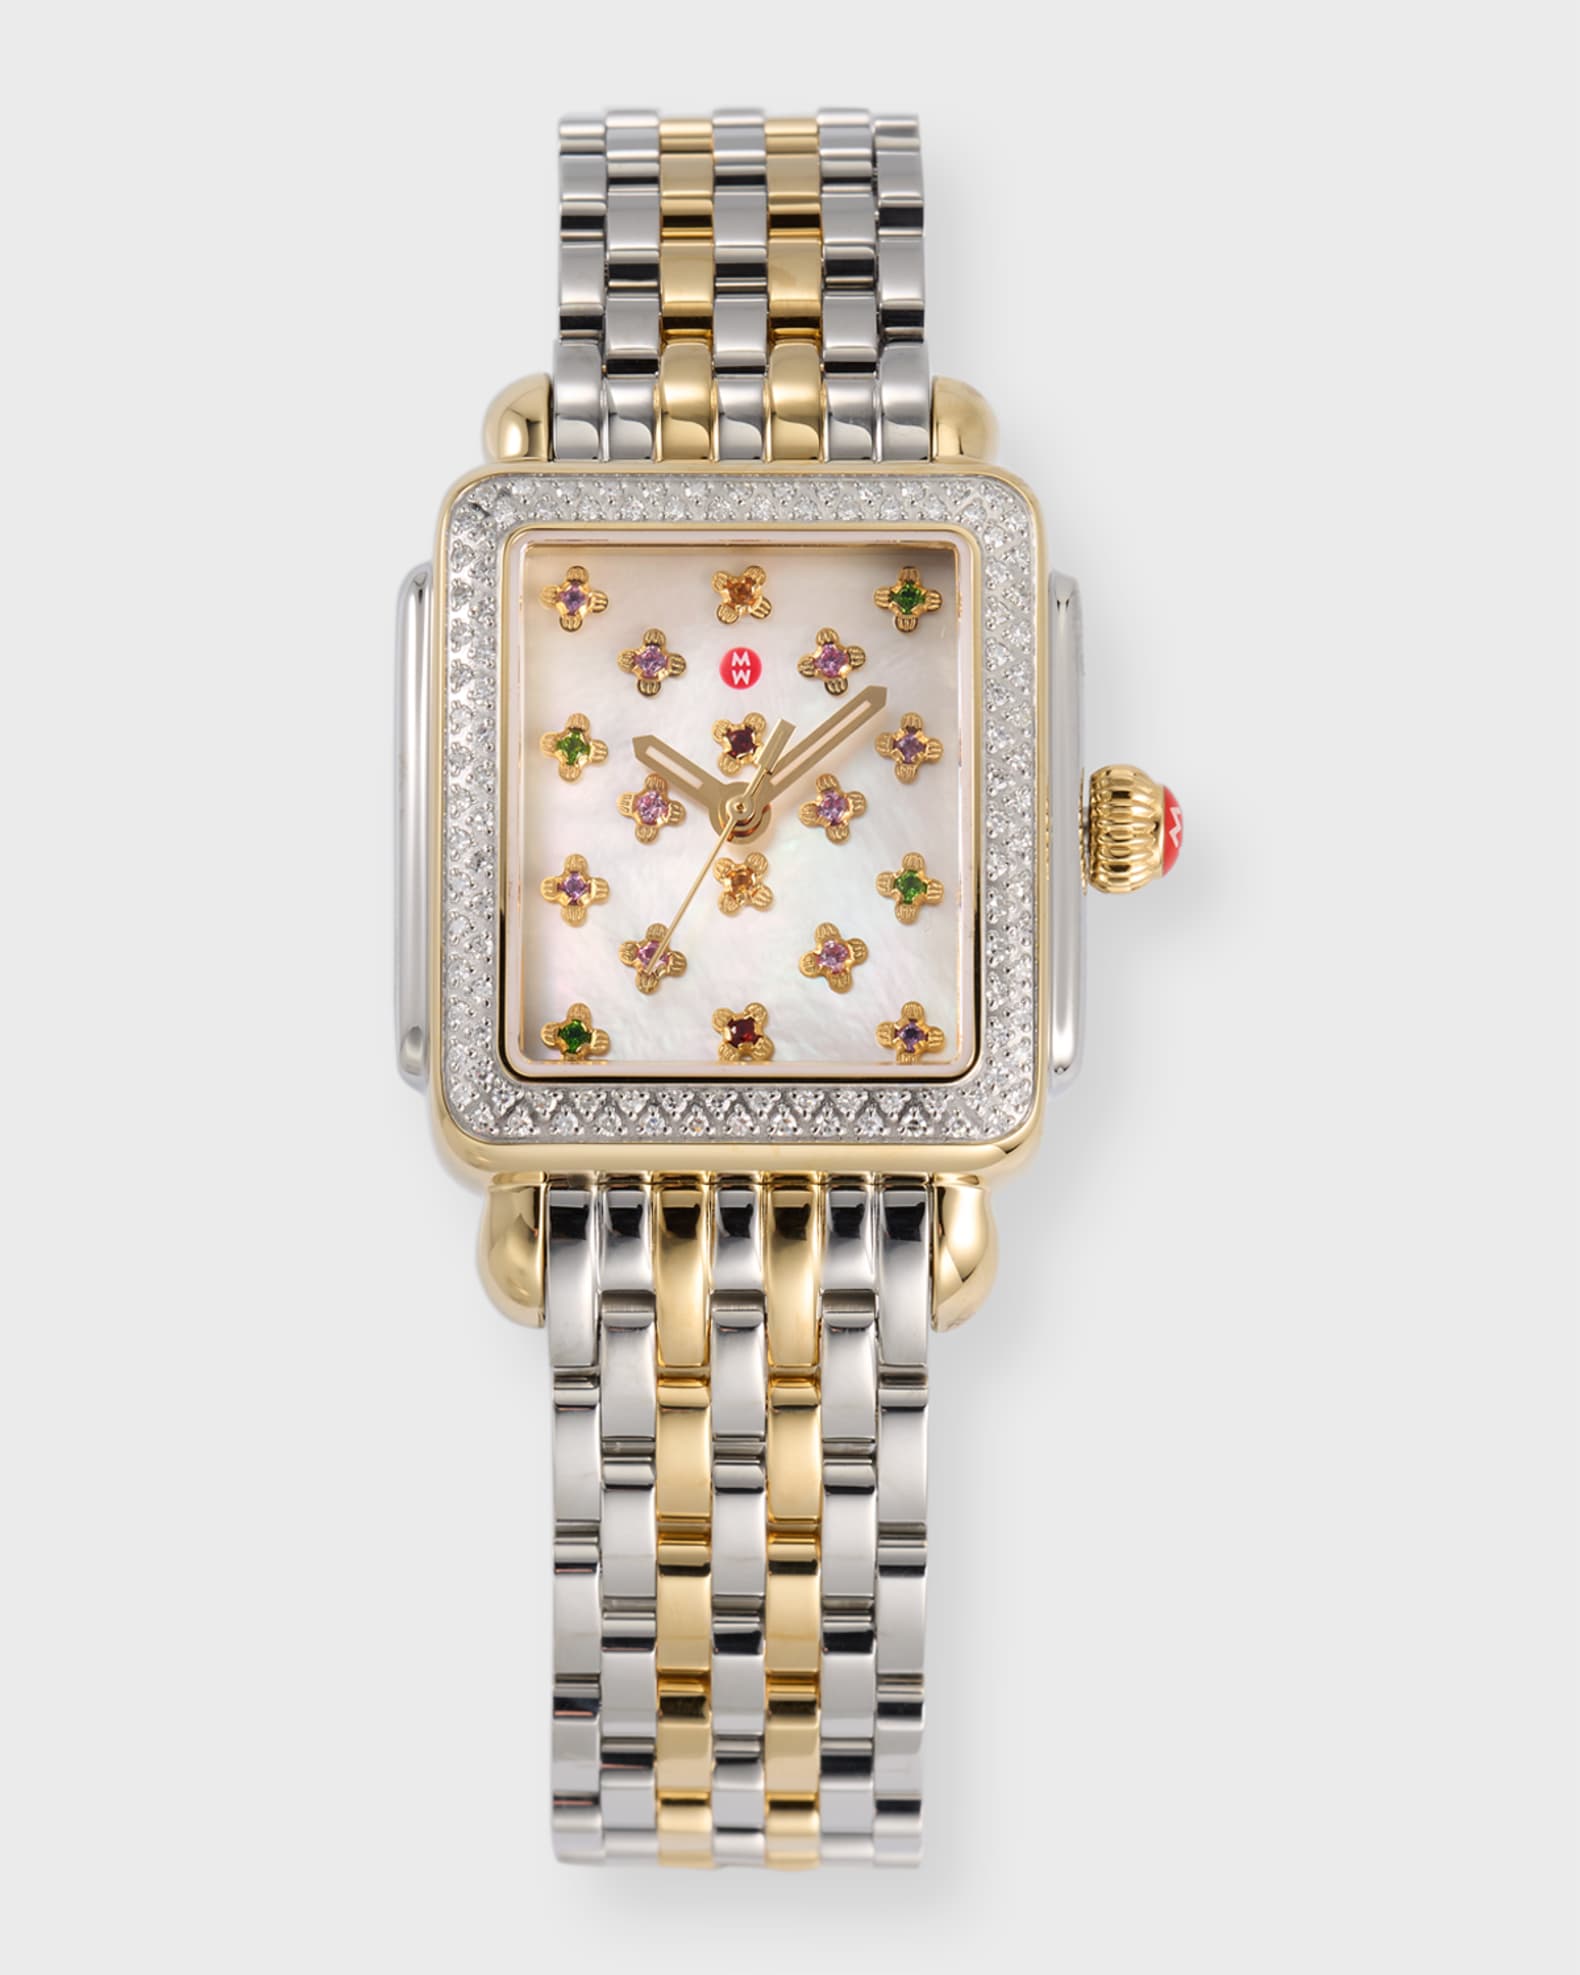 In appreciation of Robert De Niro's watches in Casino